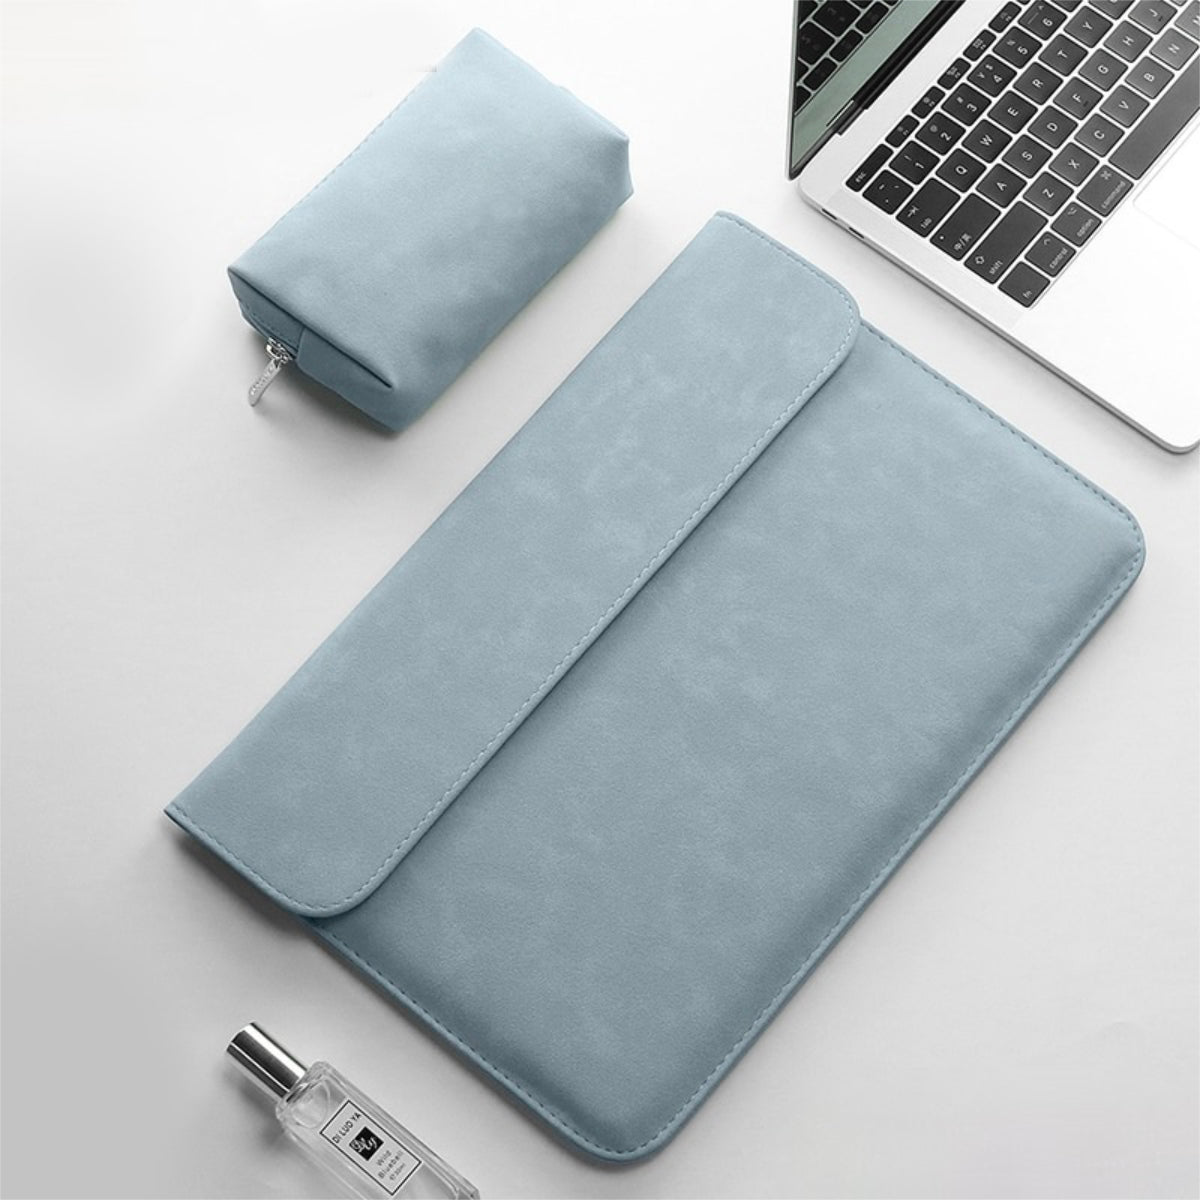 MAGCASE Macbook Draufsicht Blau Laptophülle Notebook Tasche